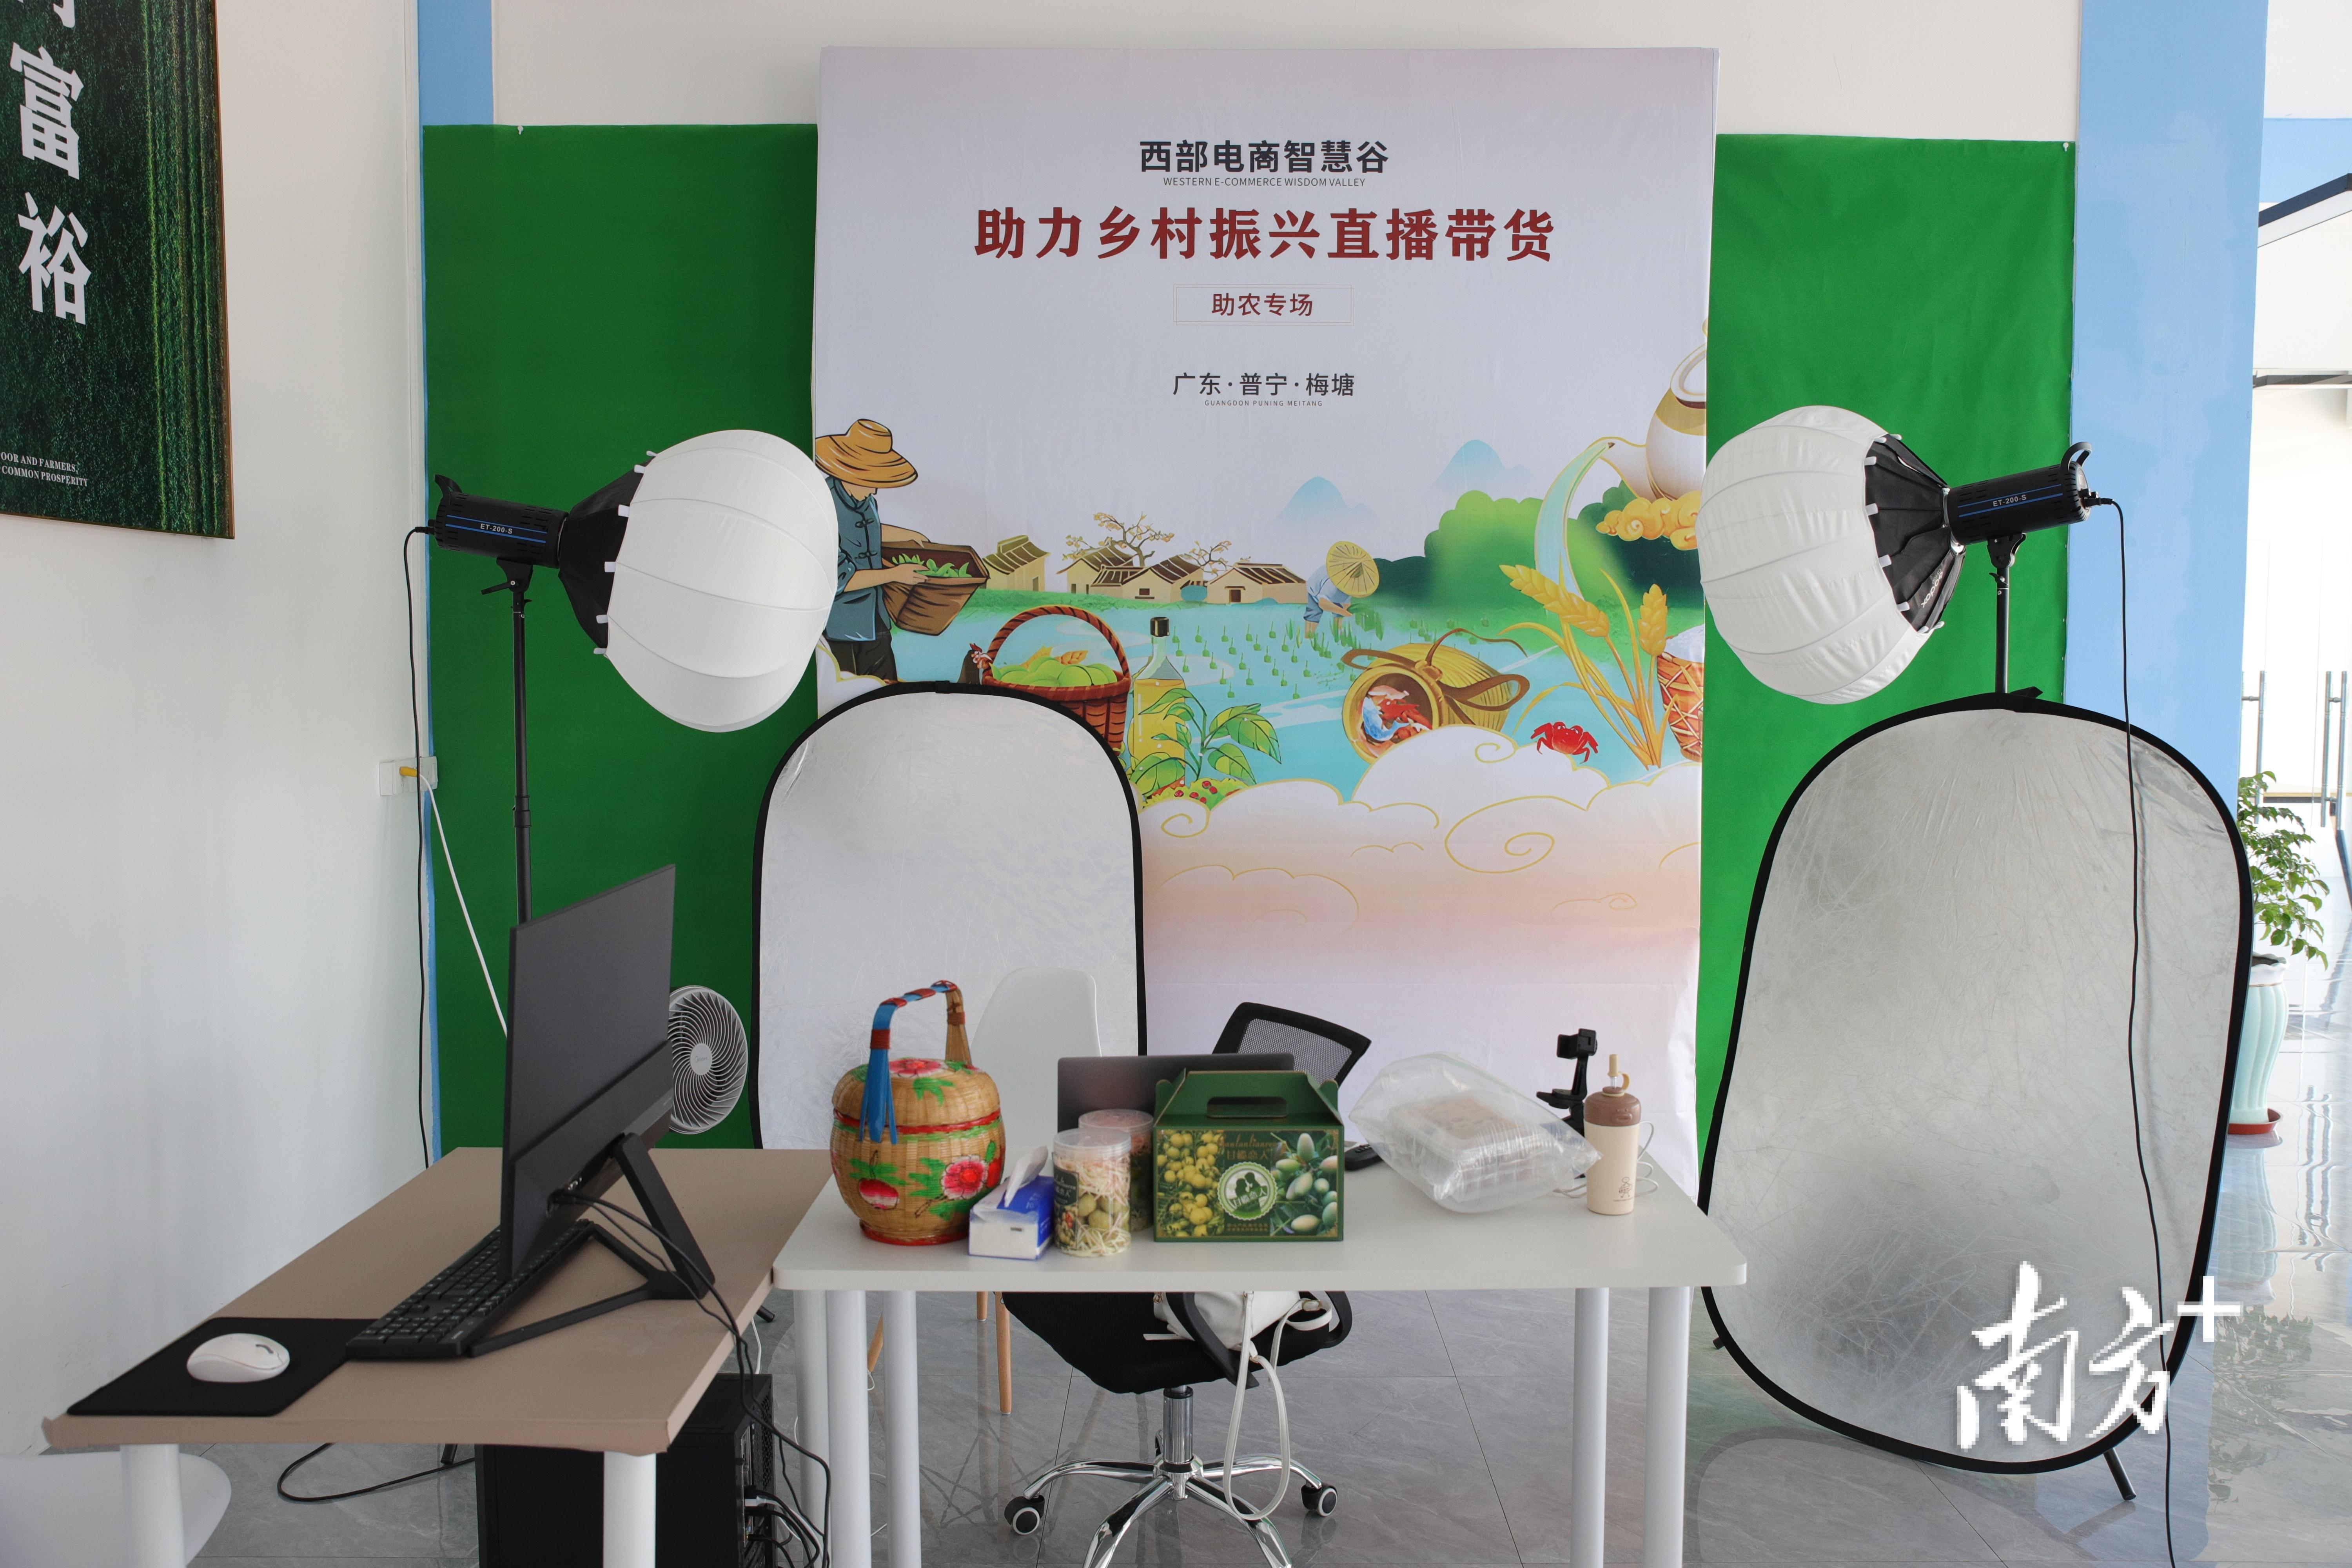 普宁梅塘镇成立电子商务公共服务中心,助力农村电商高质量发展